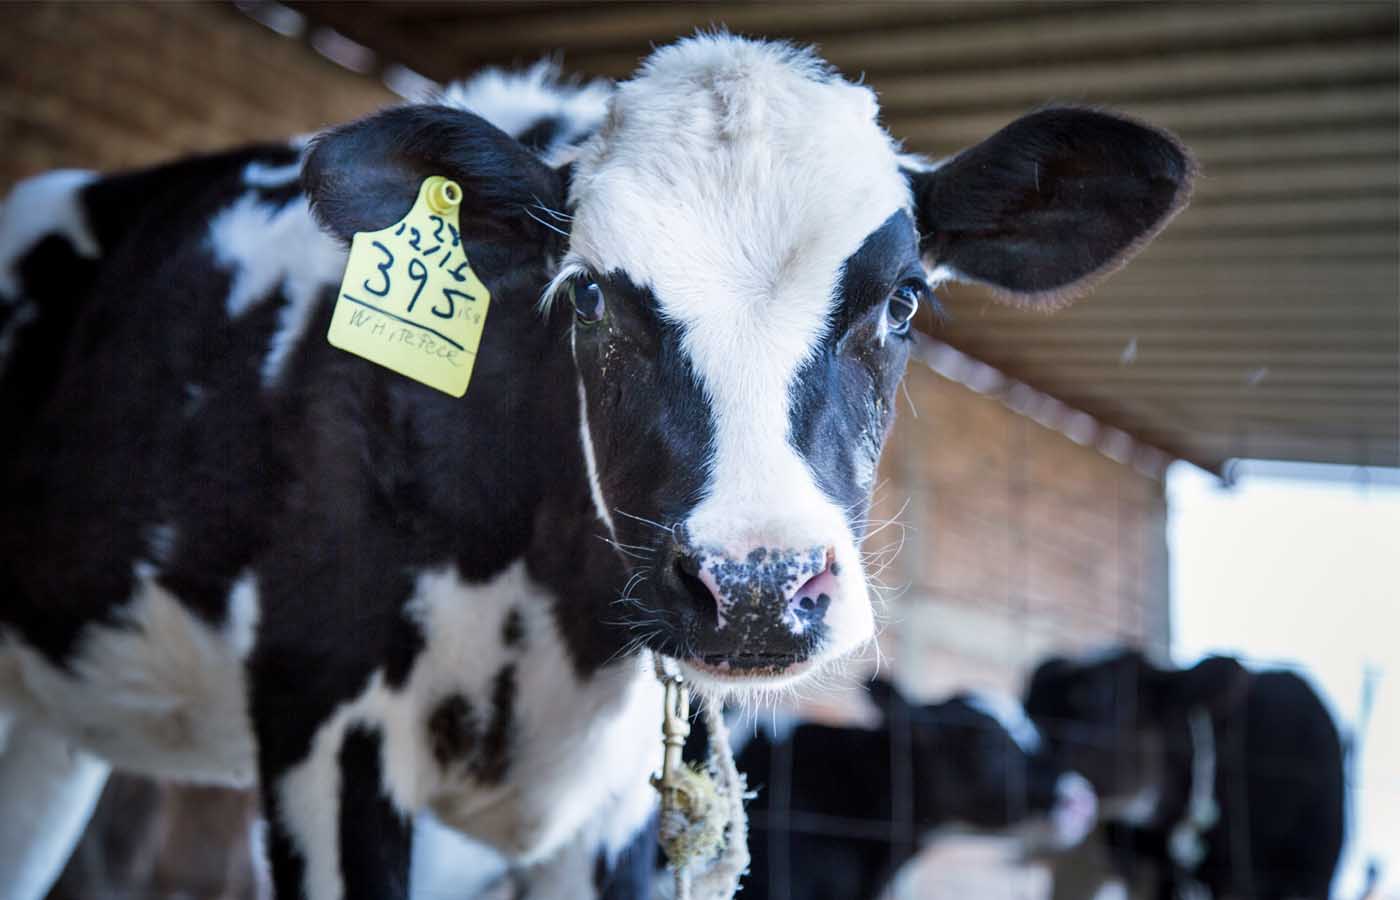 Calf in a dairy farm